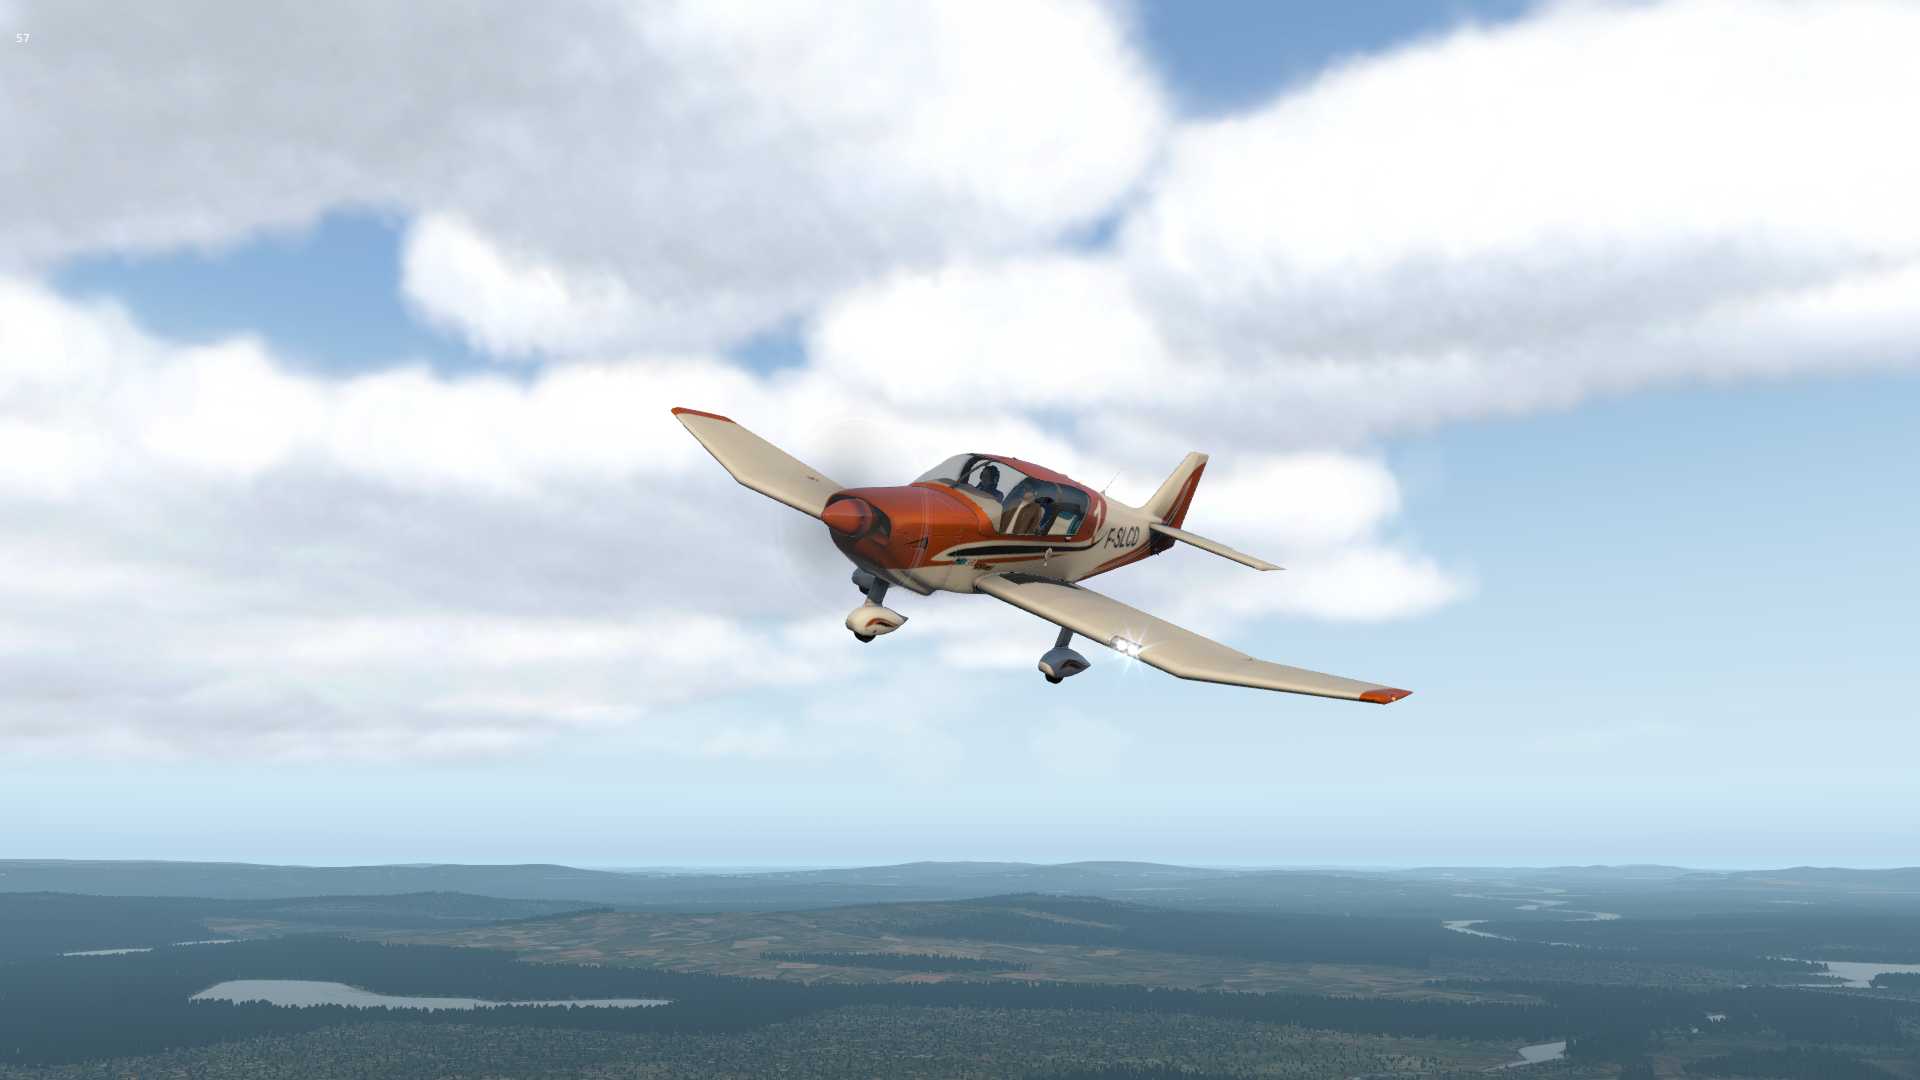 【X-Plane11】Sveg（ESND)上空的Robin-1396 